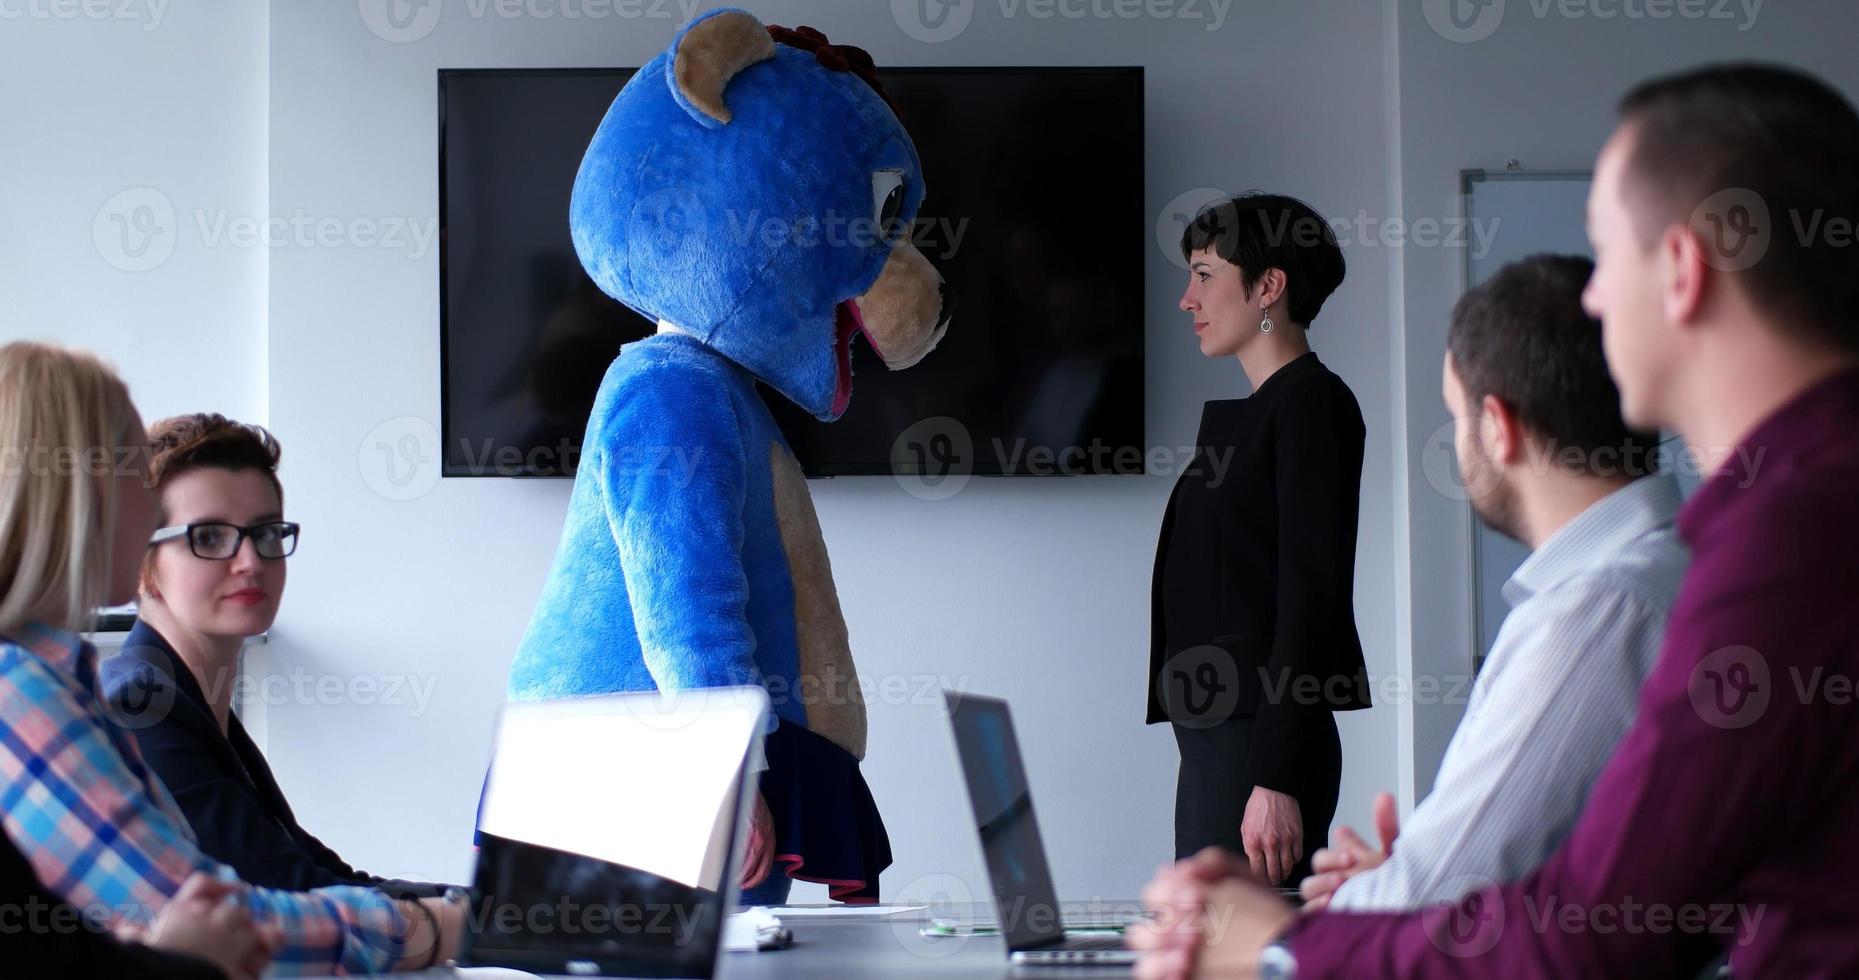 patron habillé en ours s'amusant avec des gens d'affaires dans un bureau branché photo